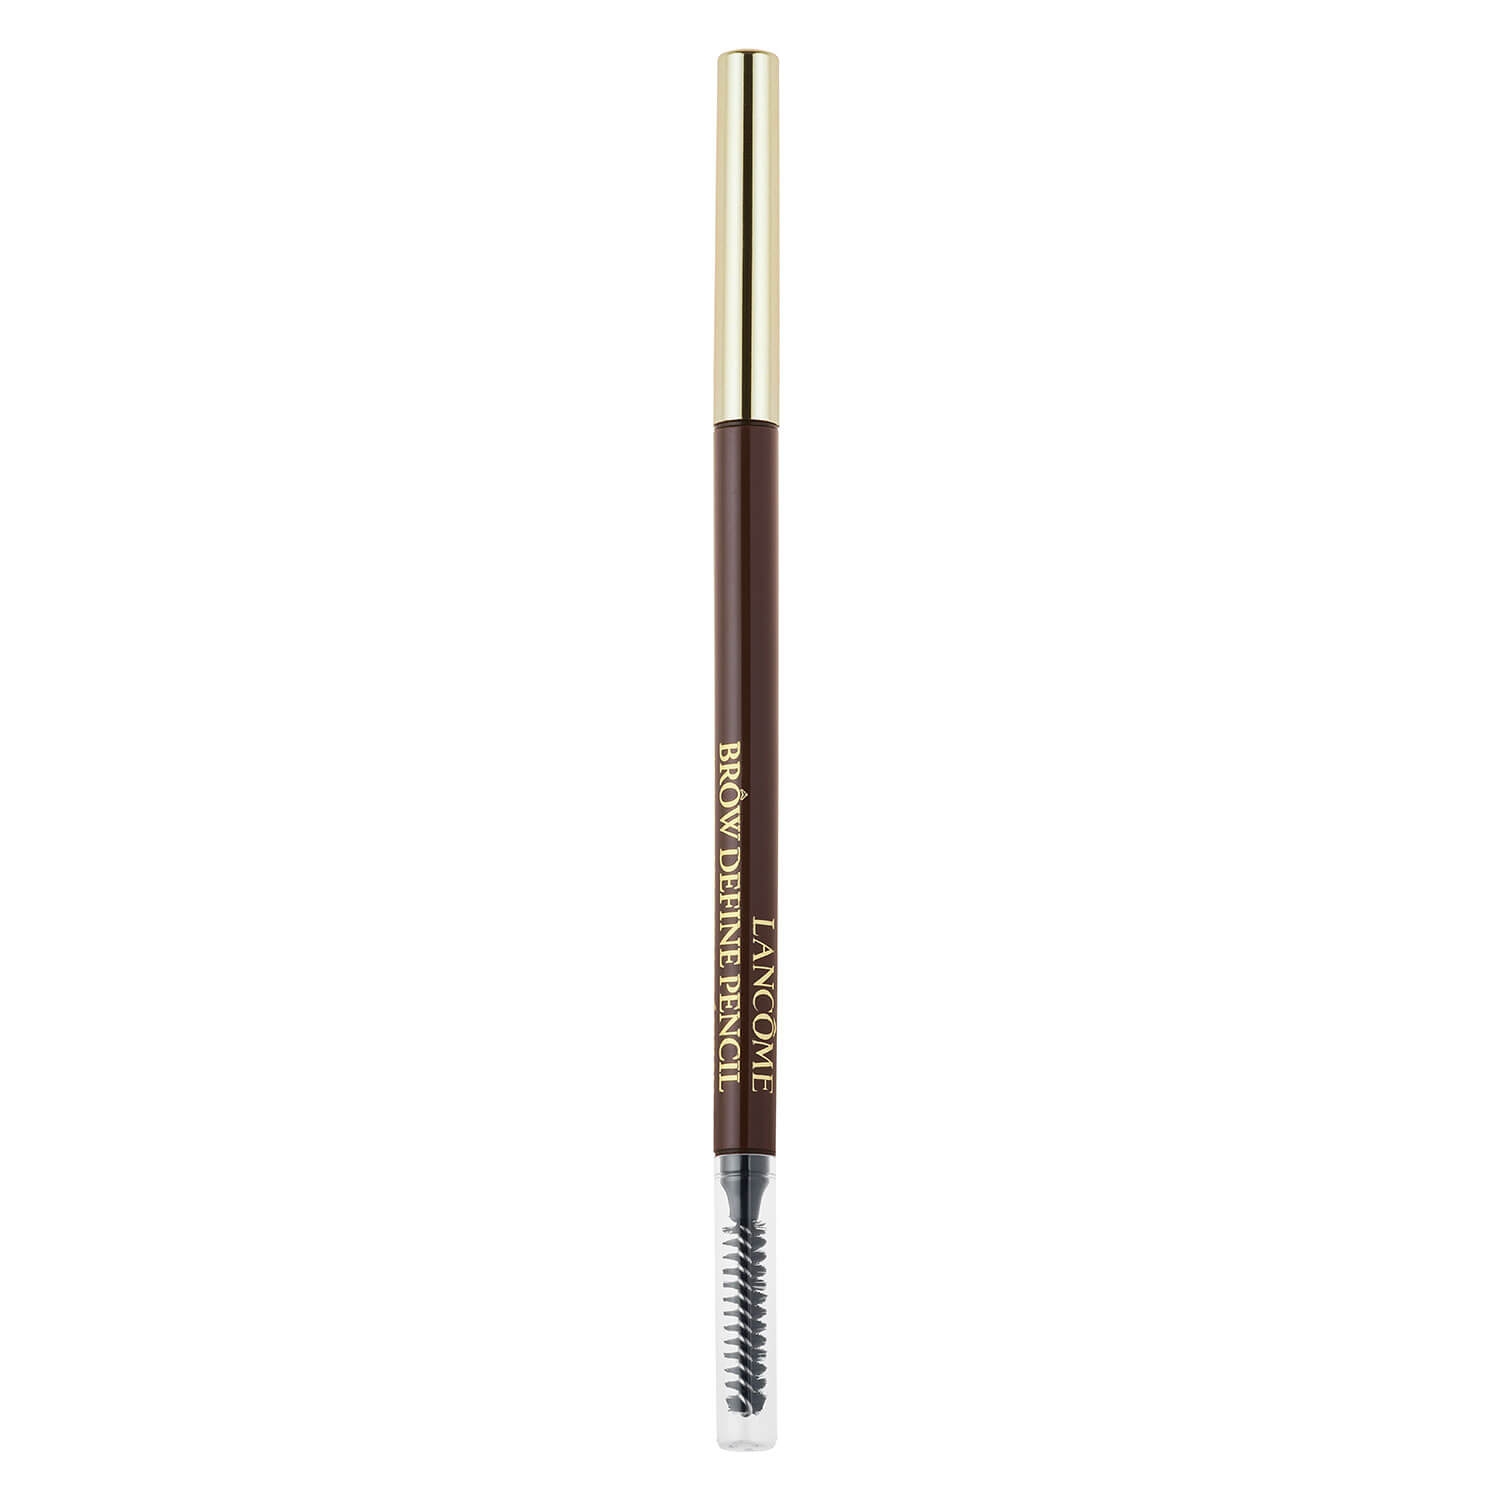 Produktbild von Lancôme Brows - Brow Define Pencil Dark Brown 12